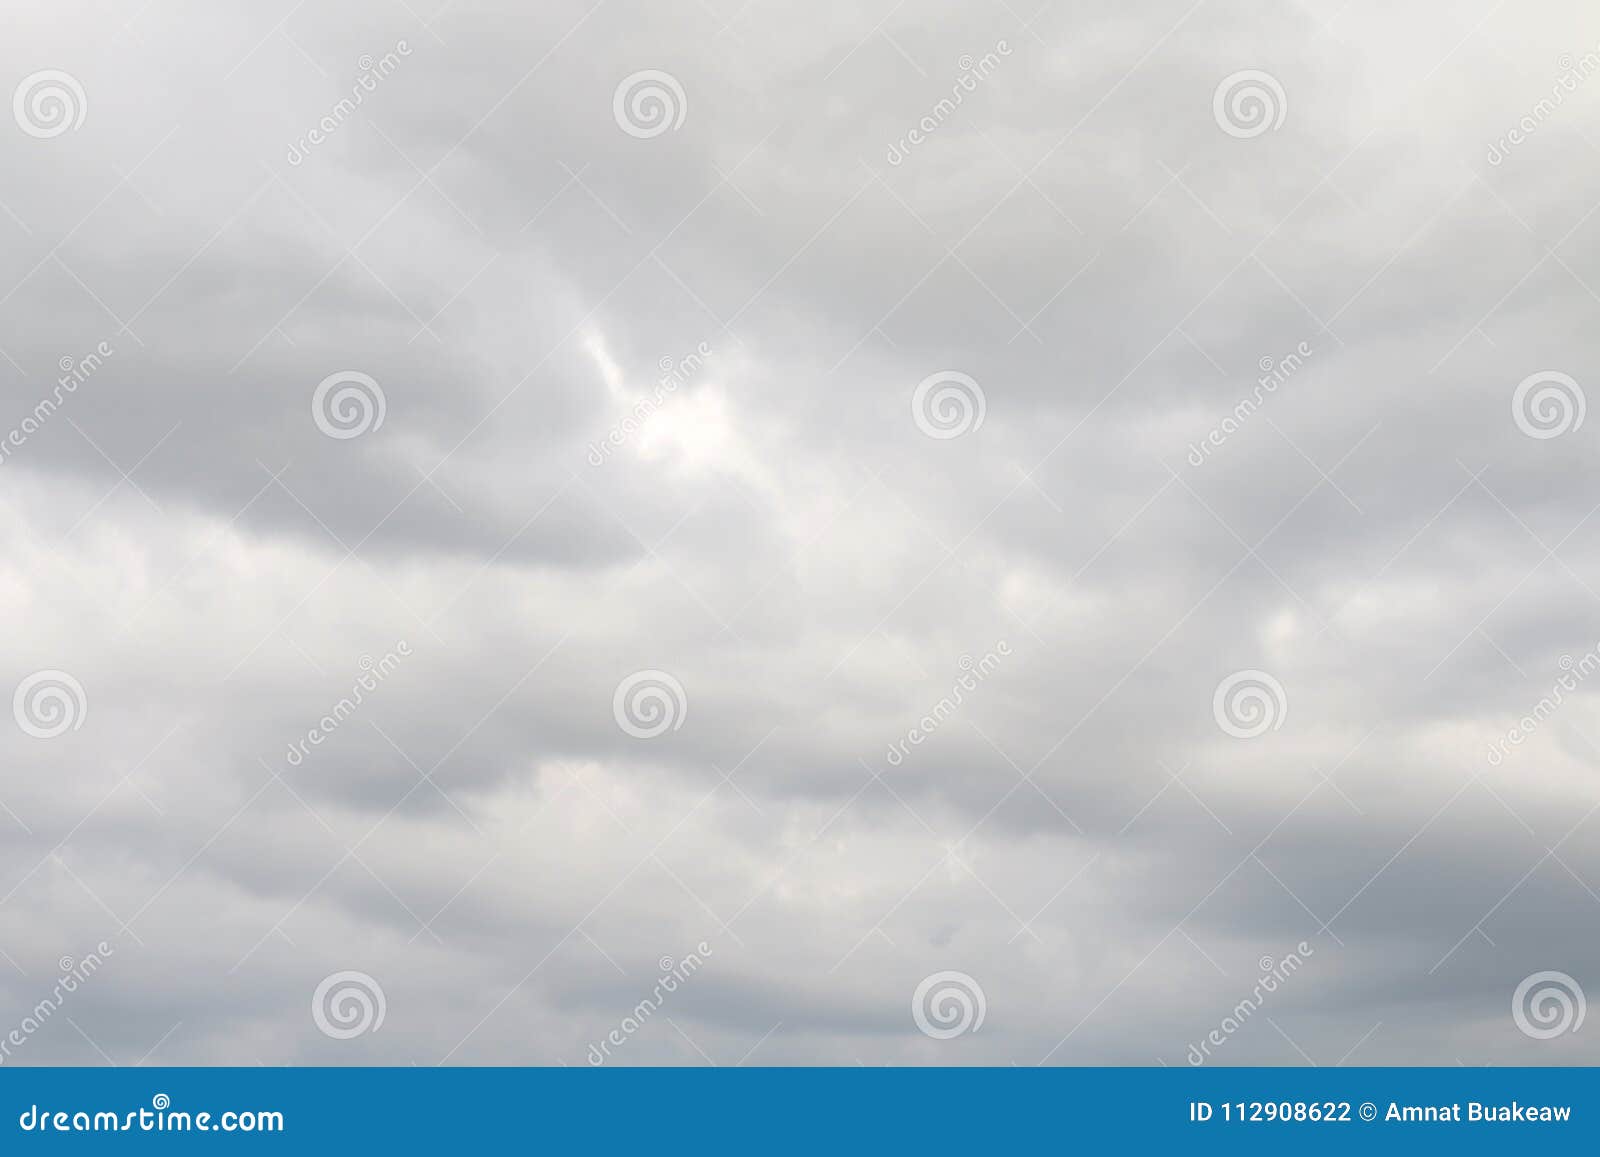 14734263 imágenes de Cielo blanco  Imágenes fotos y vectores de stock   Shutterstock